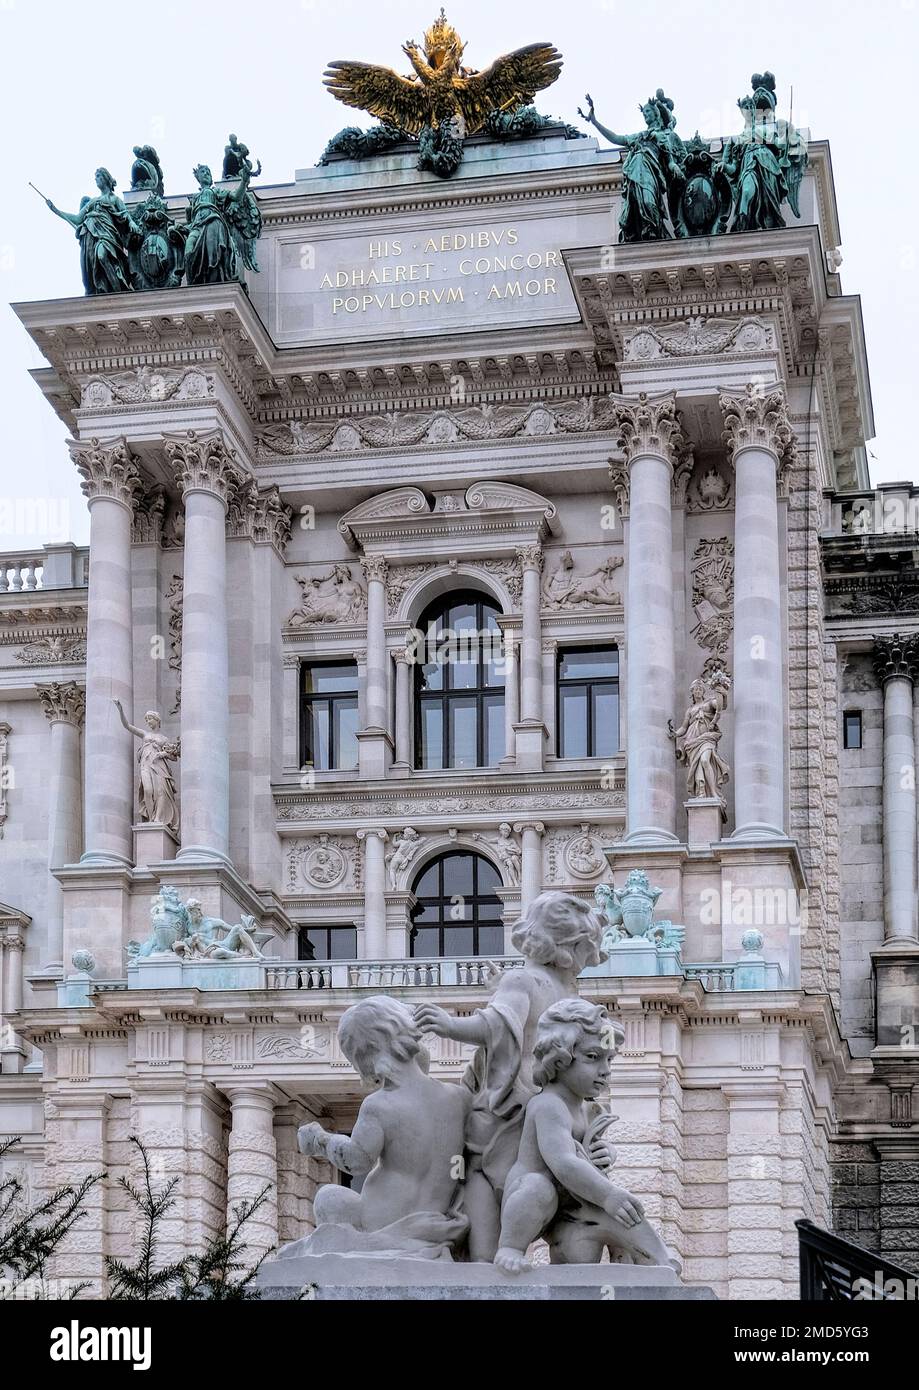 Vienne, Autriche, décembre 2022: Neue burg, Architecture du palais Hofburg avec des statues de bronze et de marbre Banque D'Images